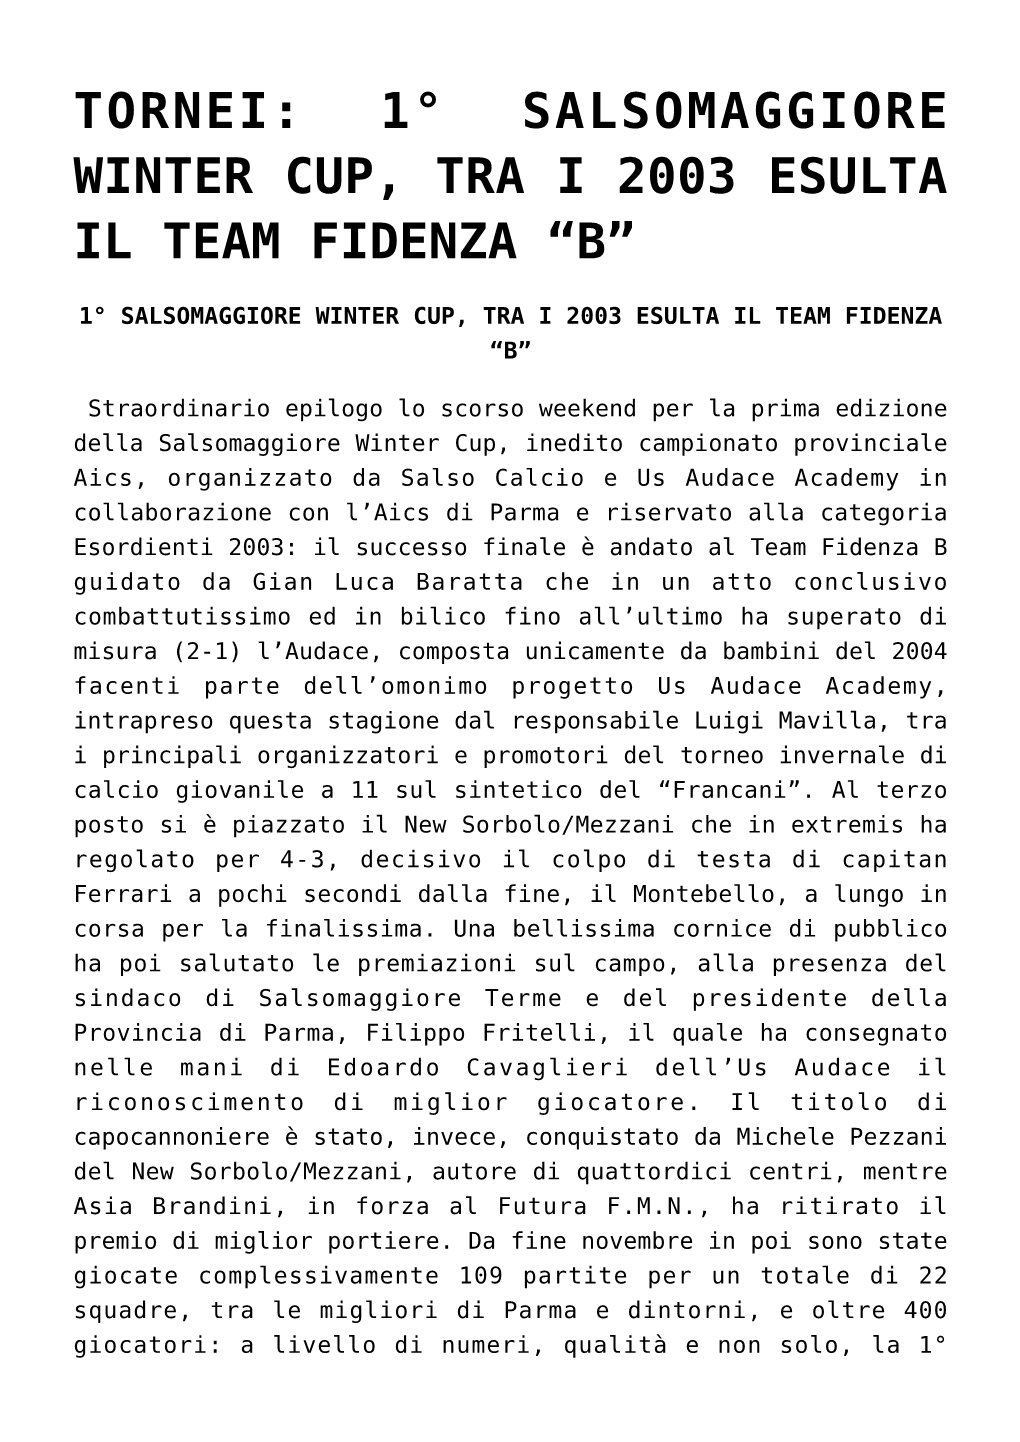 Tornei: 1° Salsomaggiore Winter Cup, Tra I 2003 Esulta Il Team Fidenza “B”